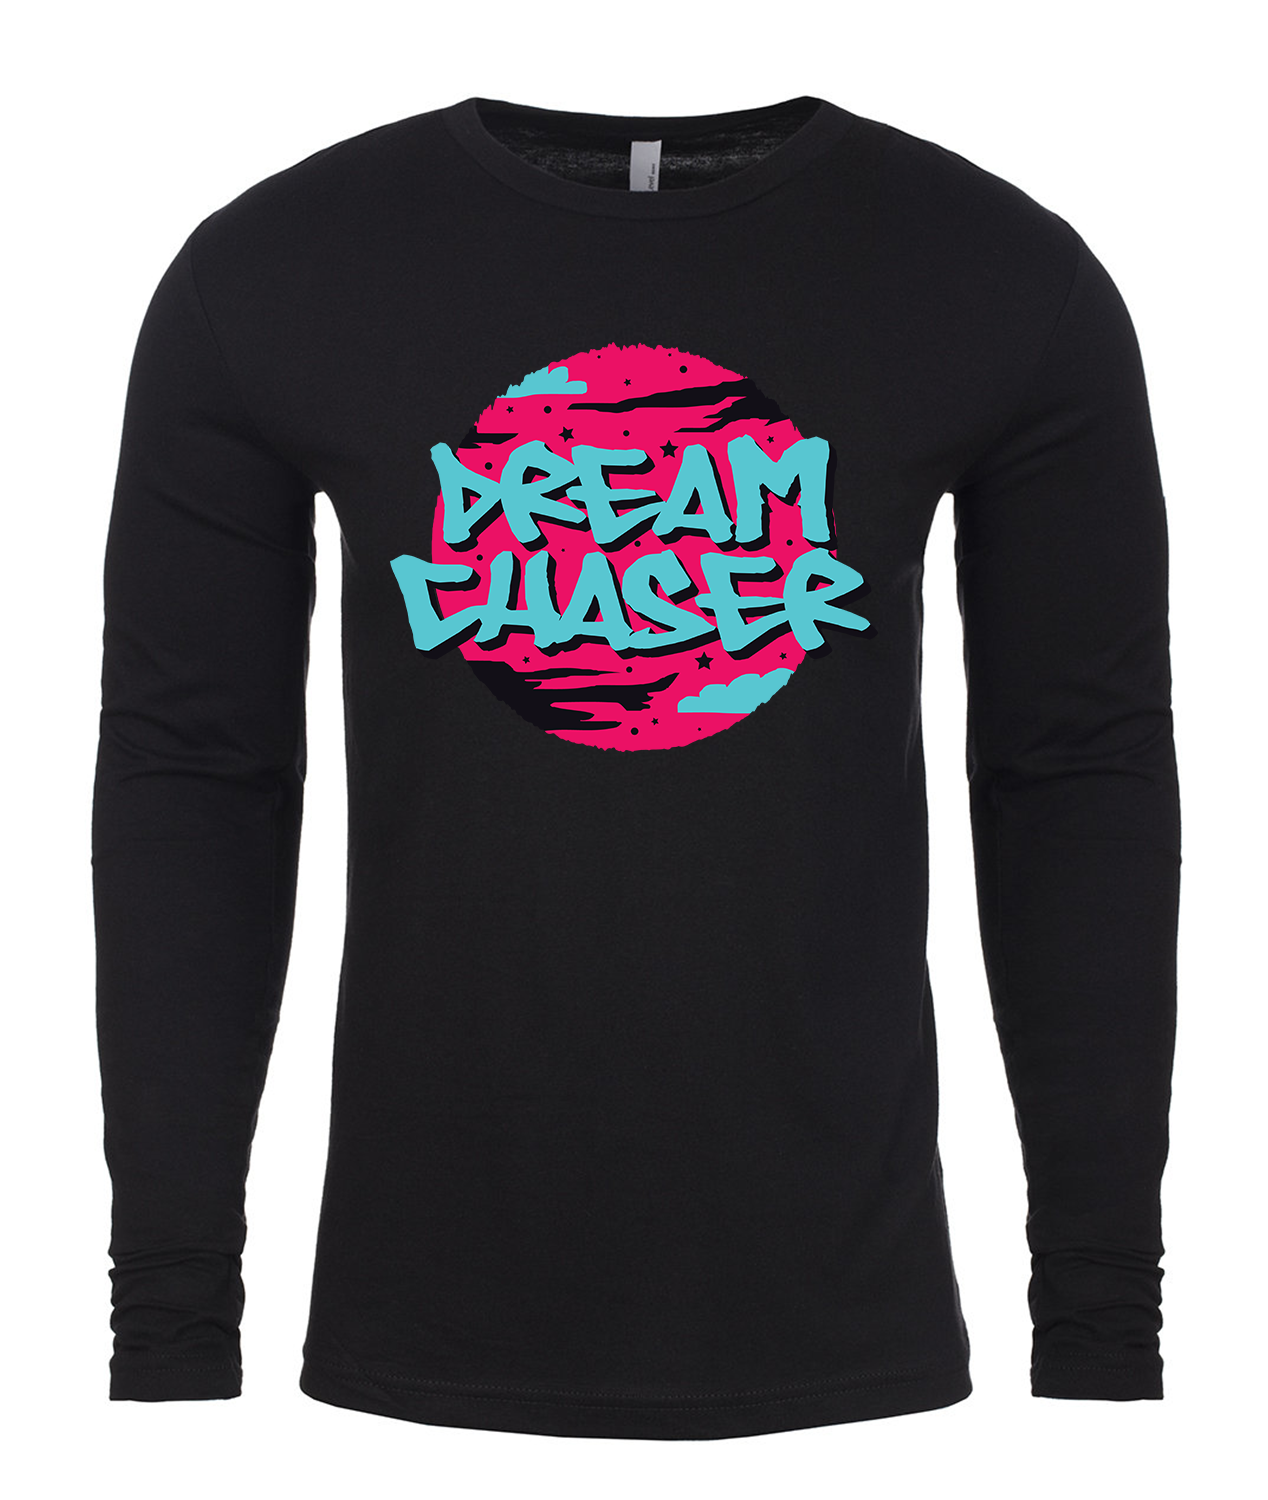 Dream Chaser Long-Sleeved T-Shirt